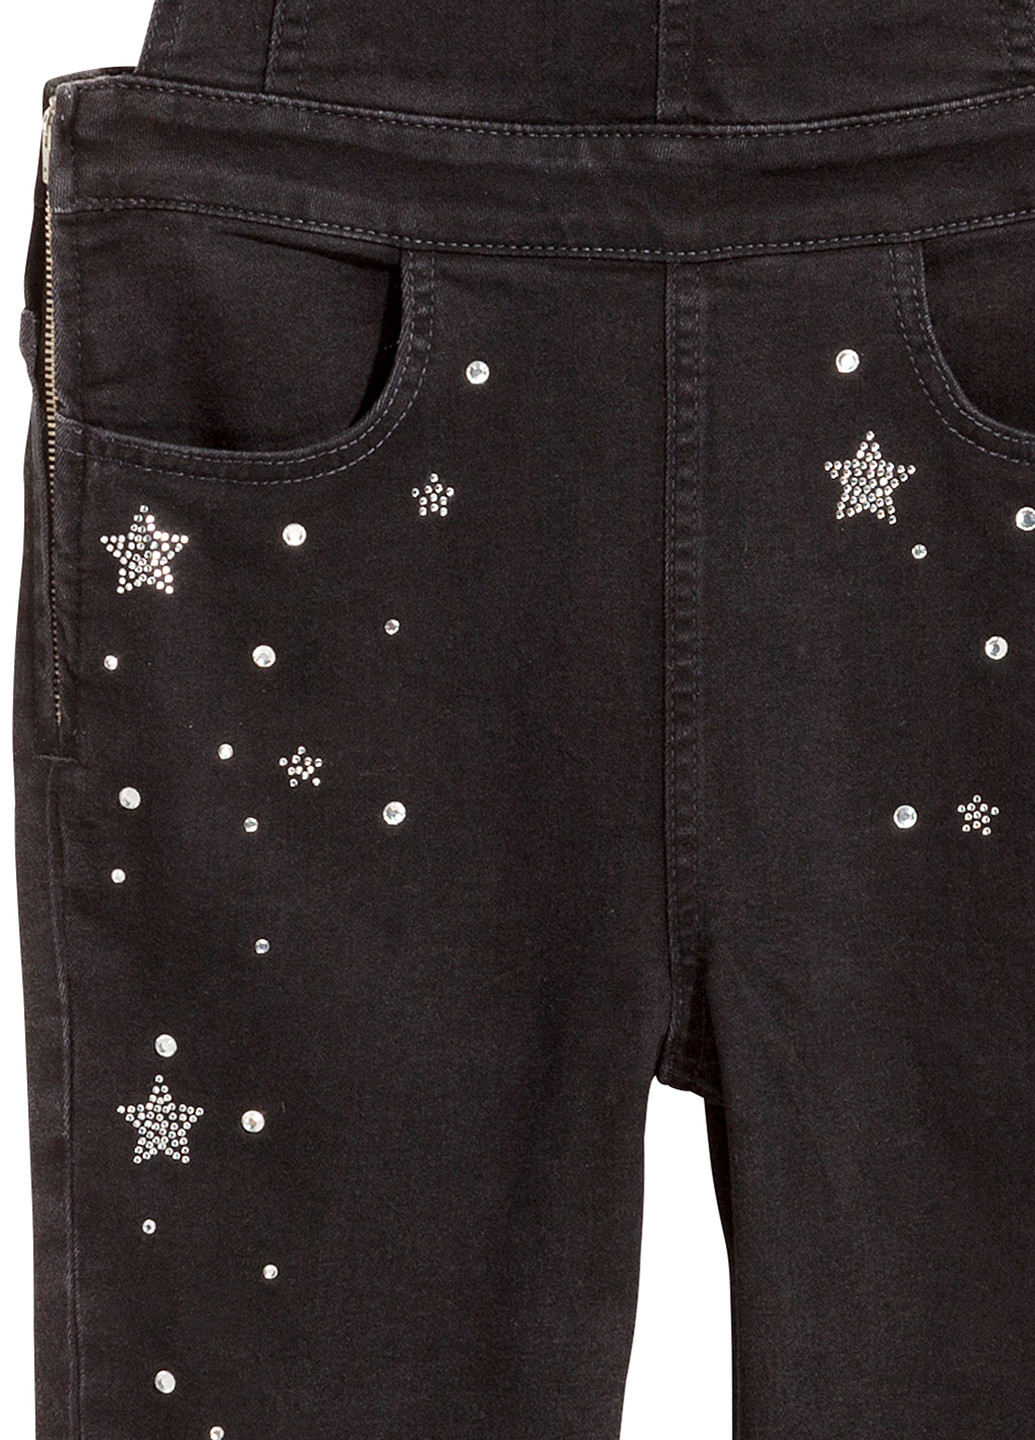 Комбинезон H&M комбинезон-брюки звезды чёрный денил хлопок